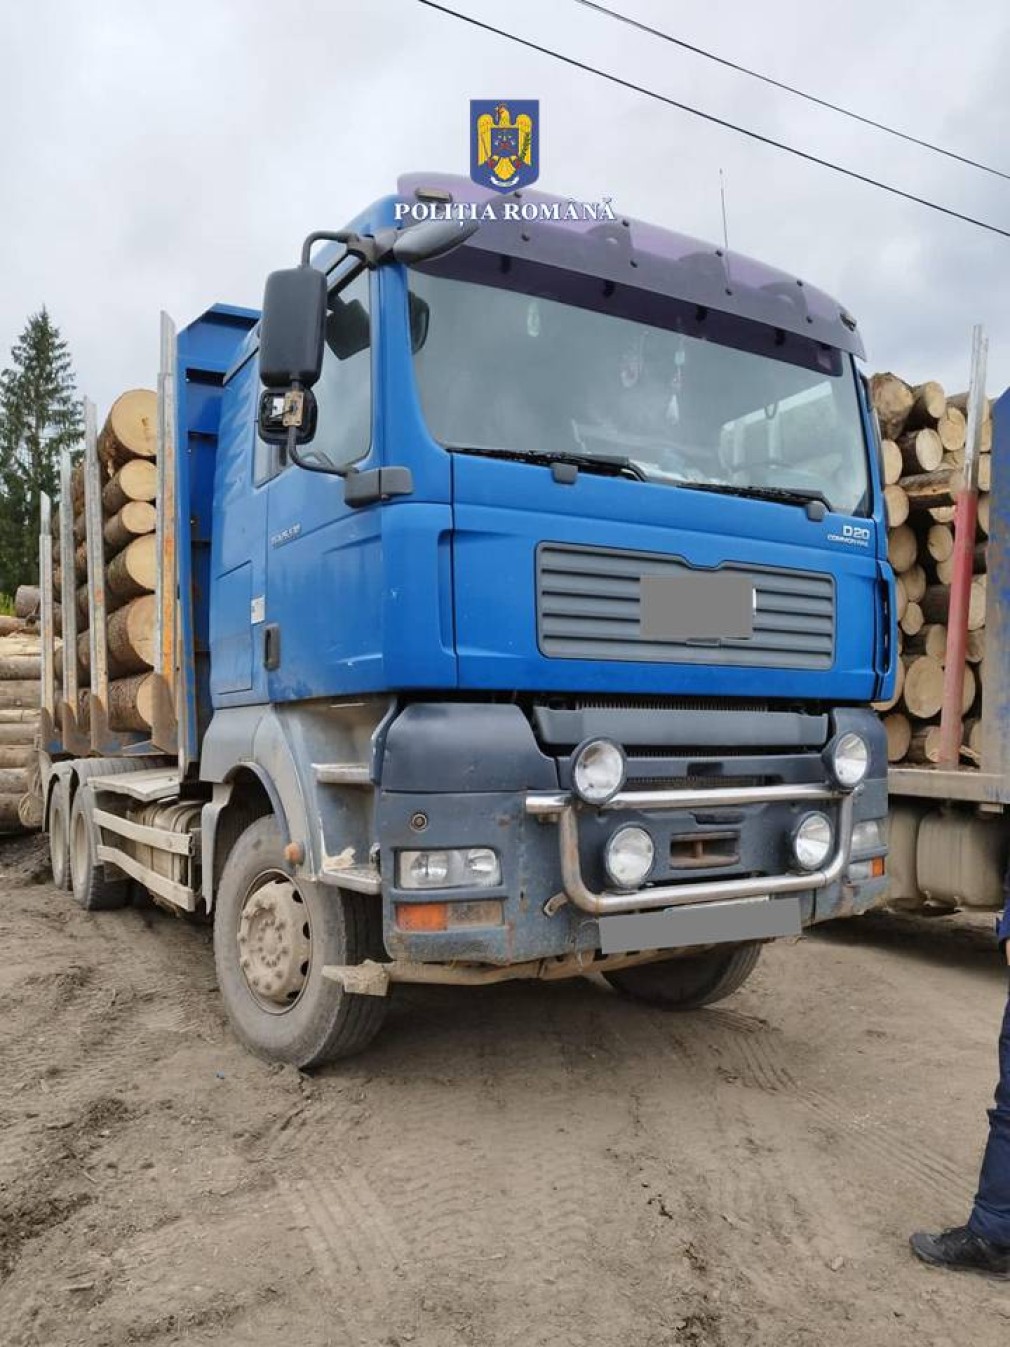 Poliția a confiscat un camion de mare tonaj și 20 metri cubi lemn